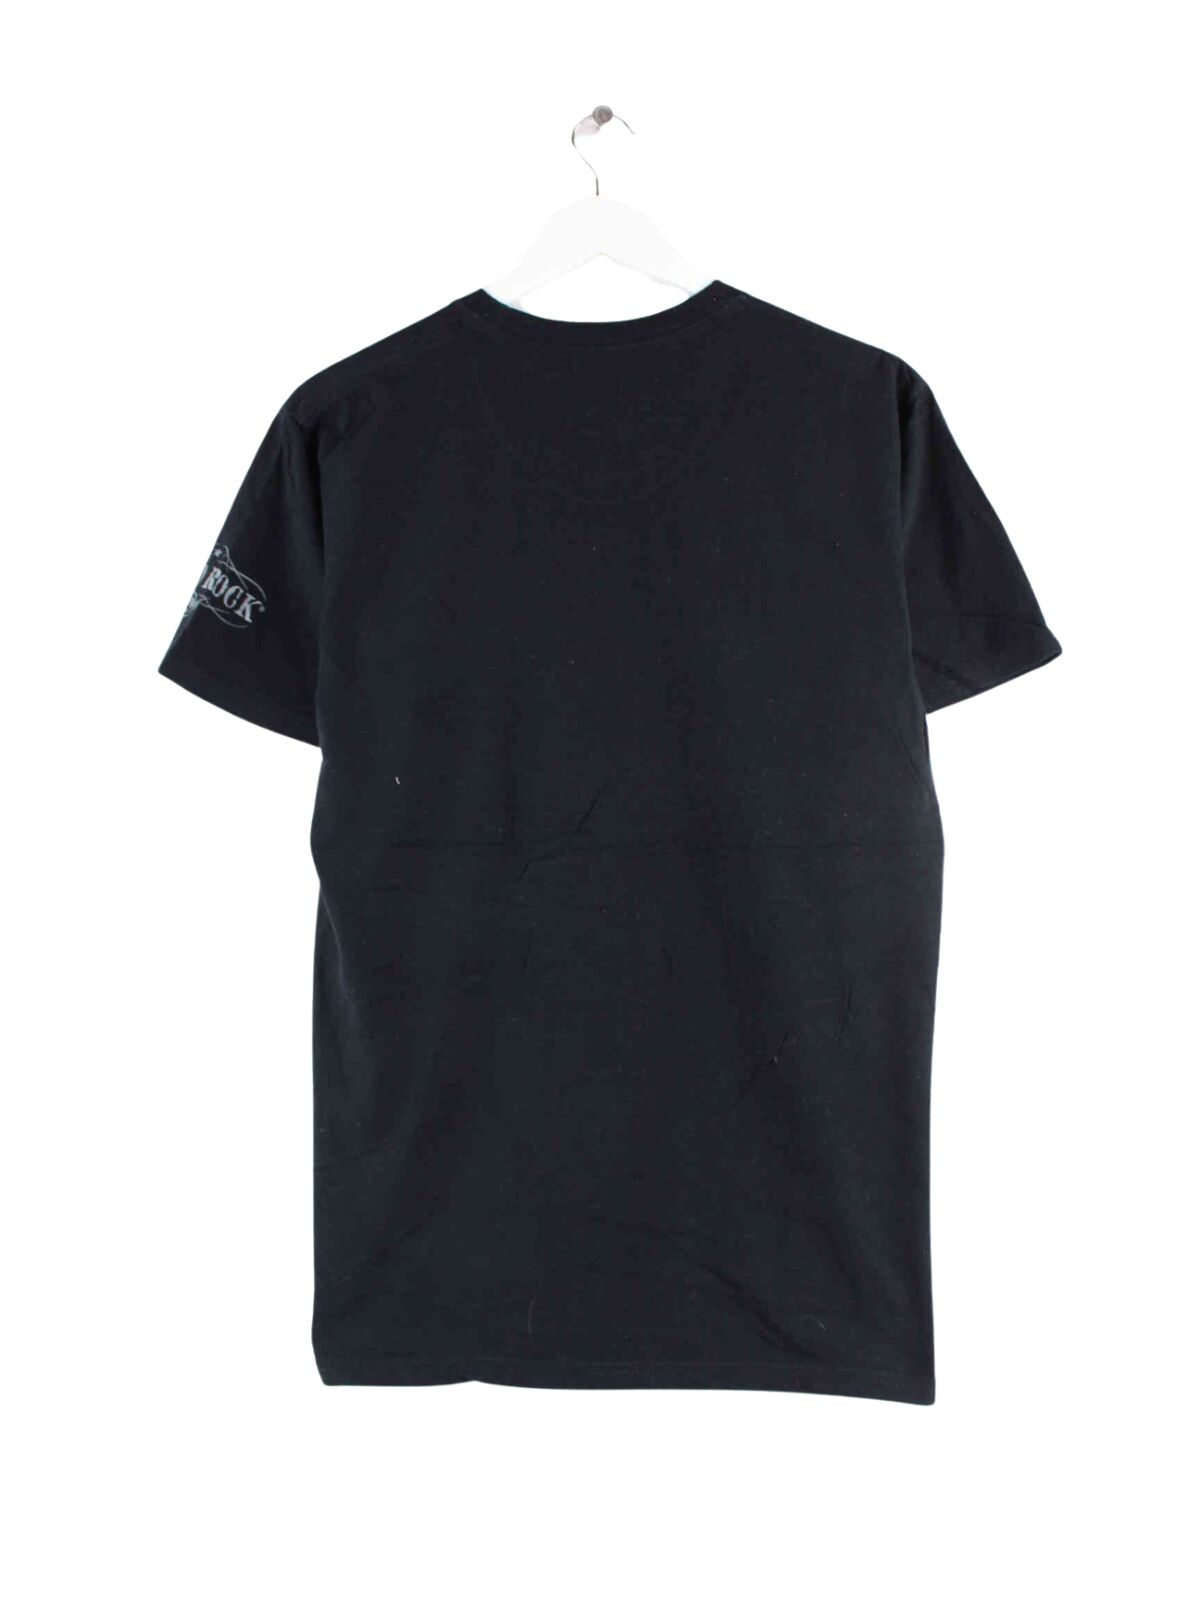 Hard Rock Cafe Print T-Shirt Schwarz M (back image)